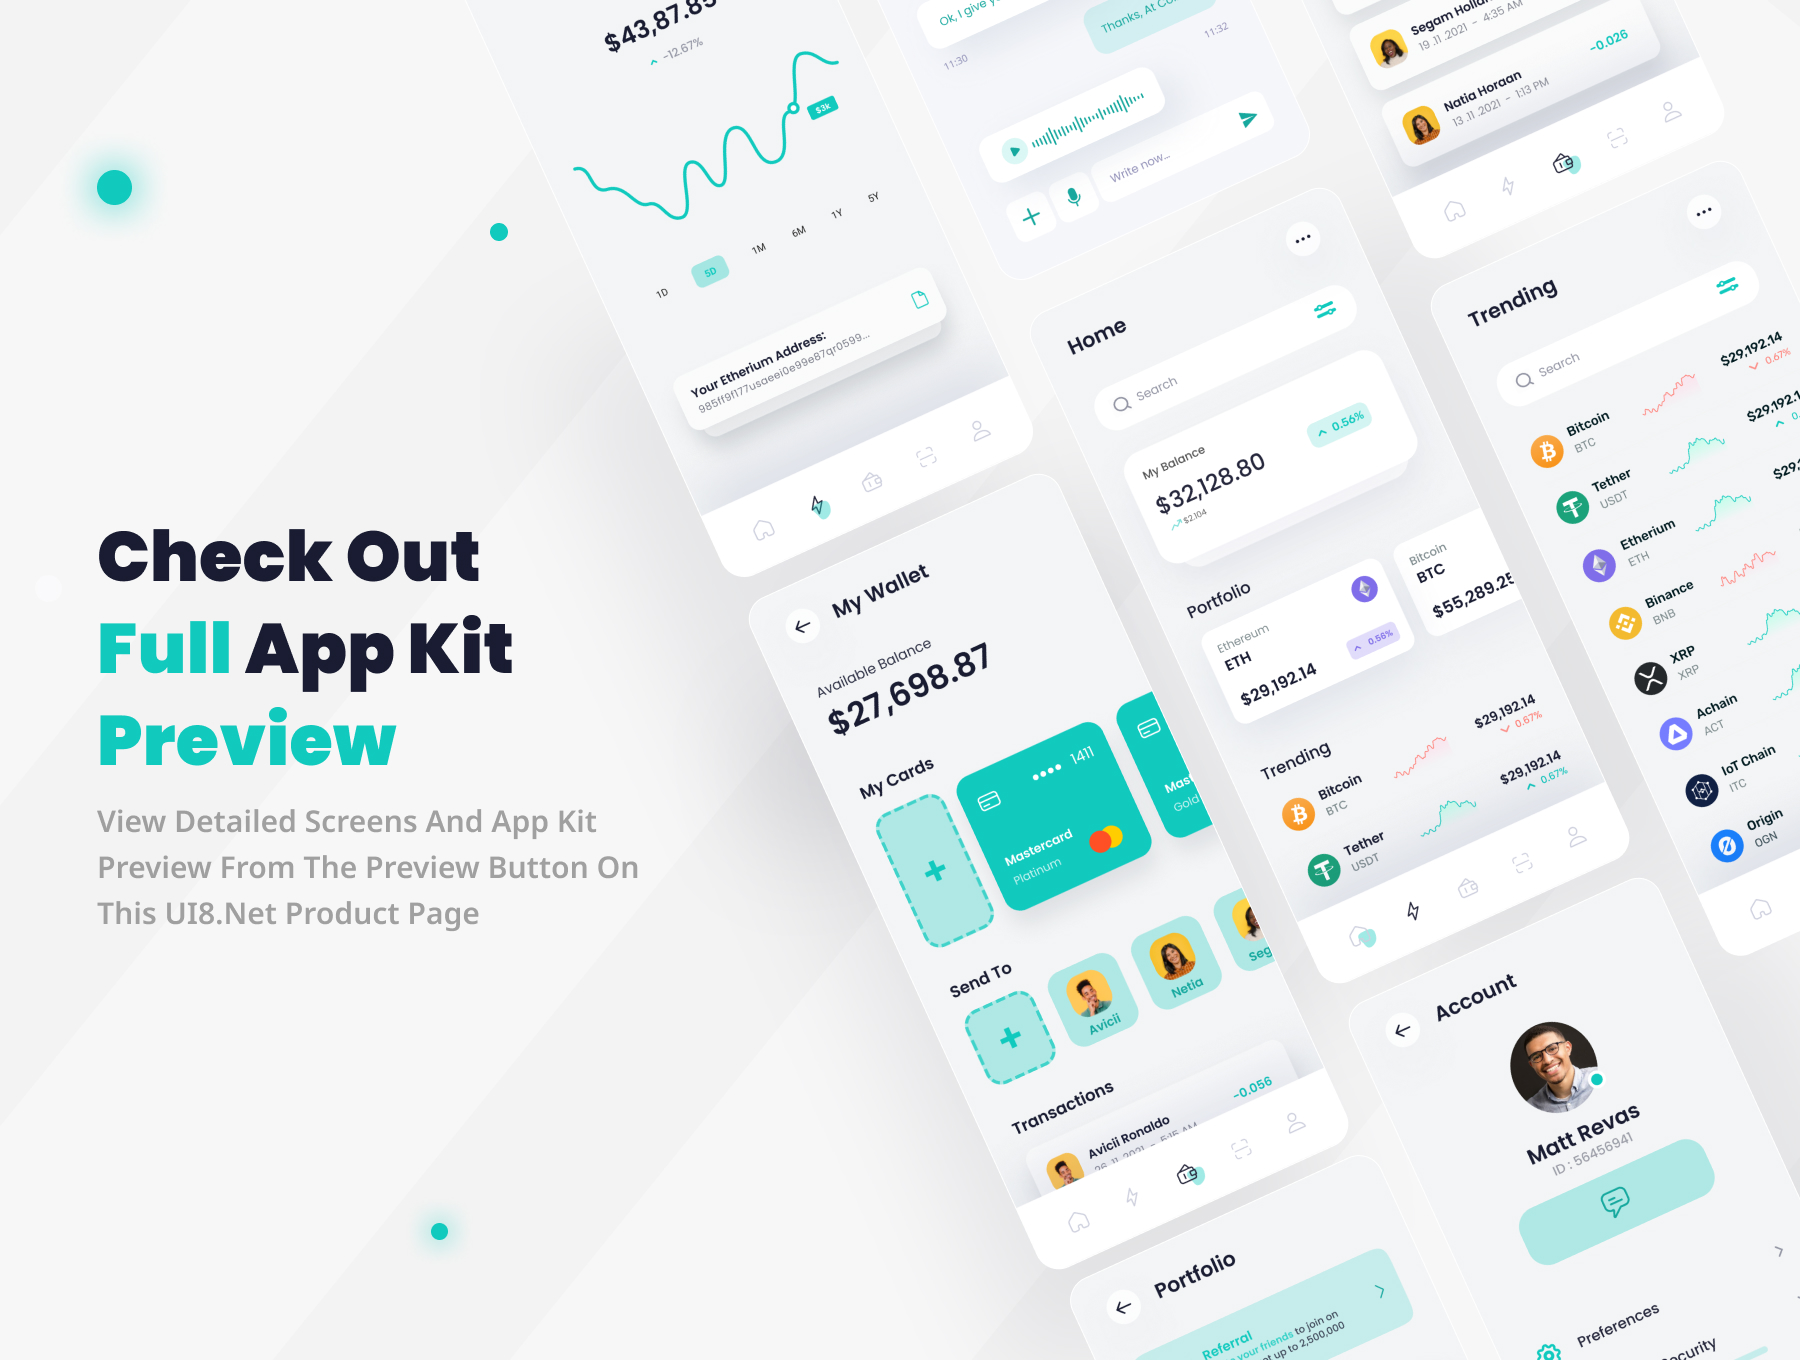 12 加密钱包和金融app应用ui kit界面设计模板 Binity – Crypto Wallet And Finance App UI Kit 12